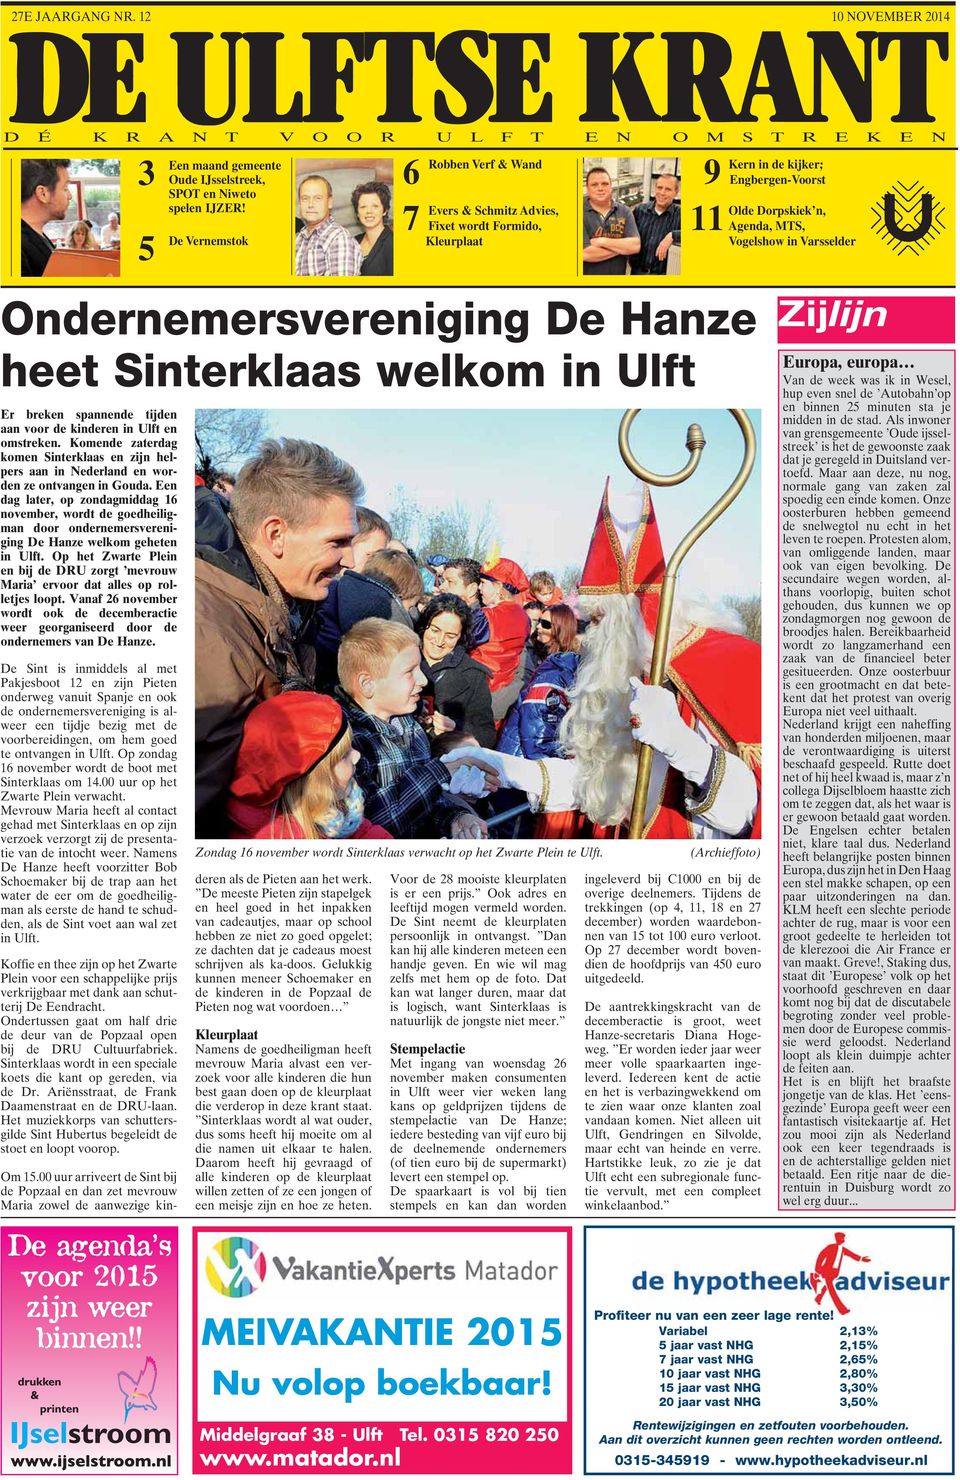 Een dag later, op zondagmiddag 16 november, wordt de goedheiligman door ondernemersvereniging De Hanze welkom geheten in Ulft.